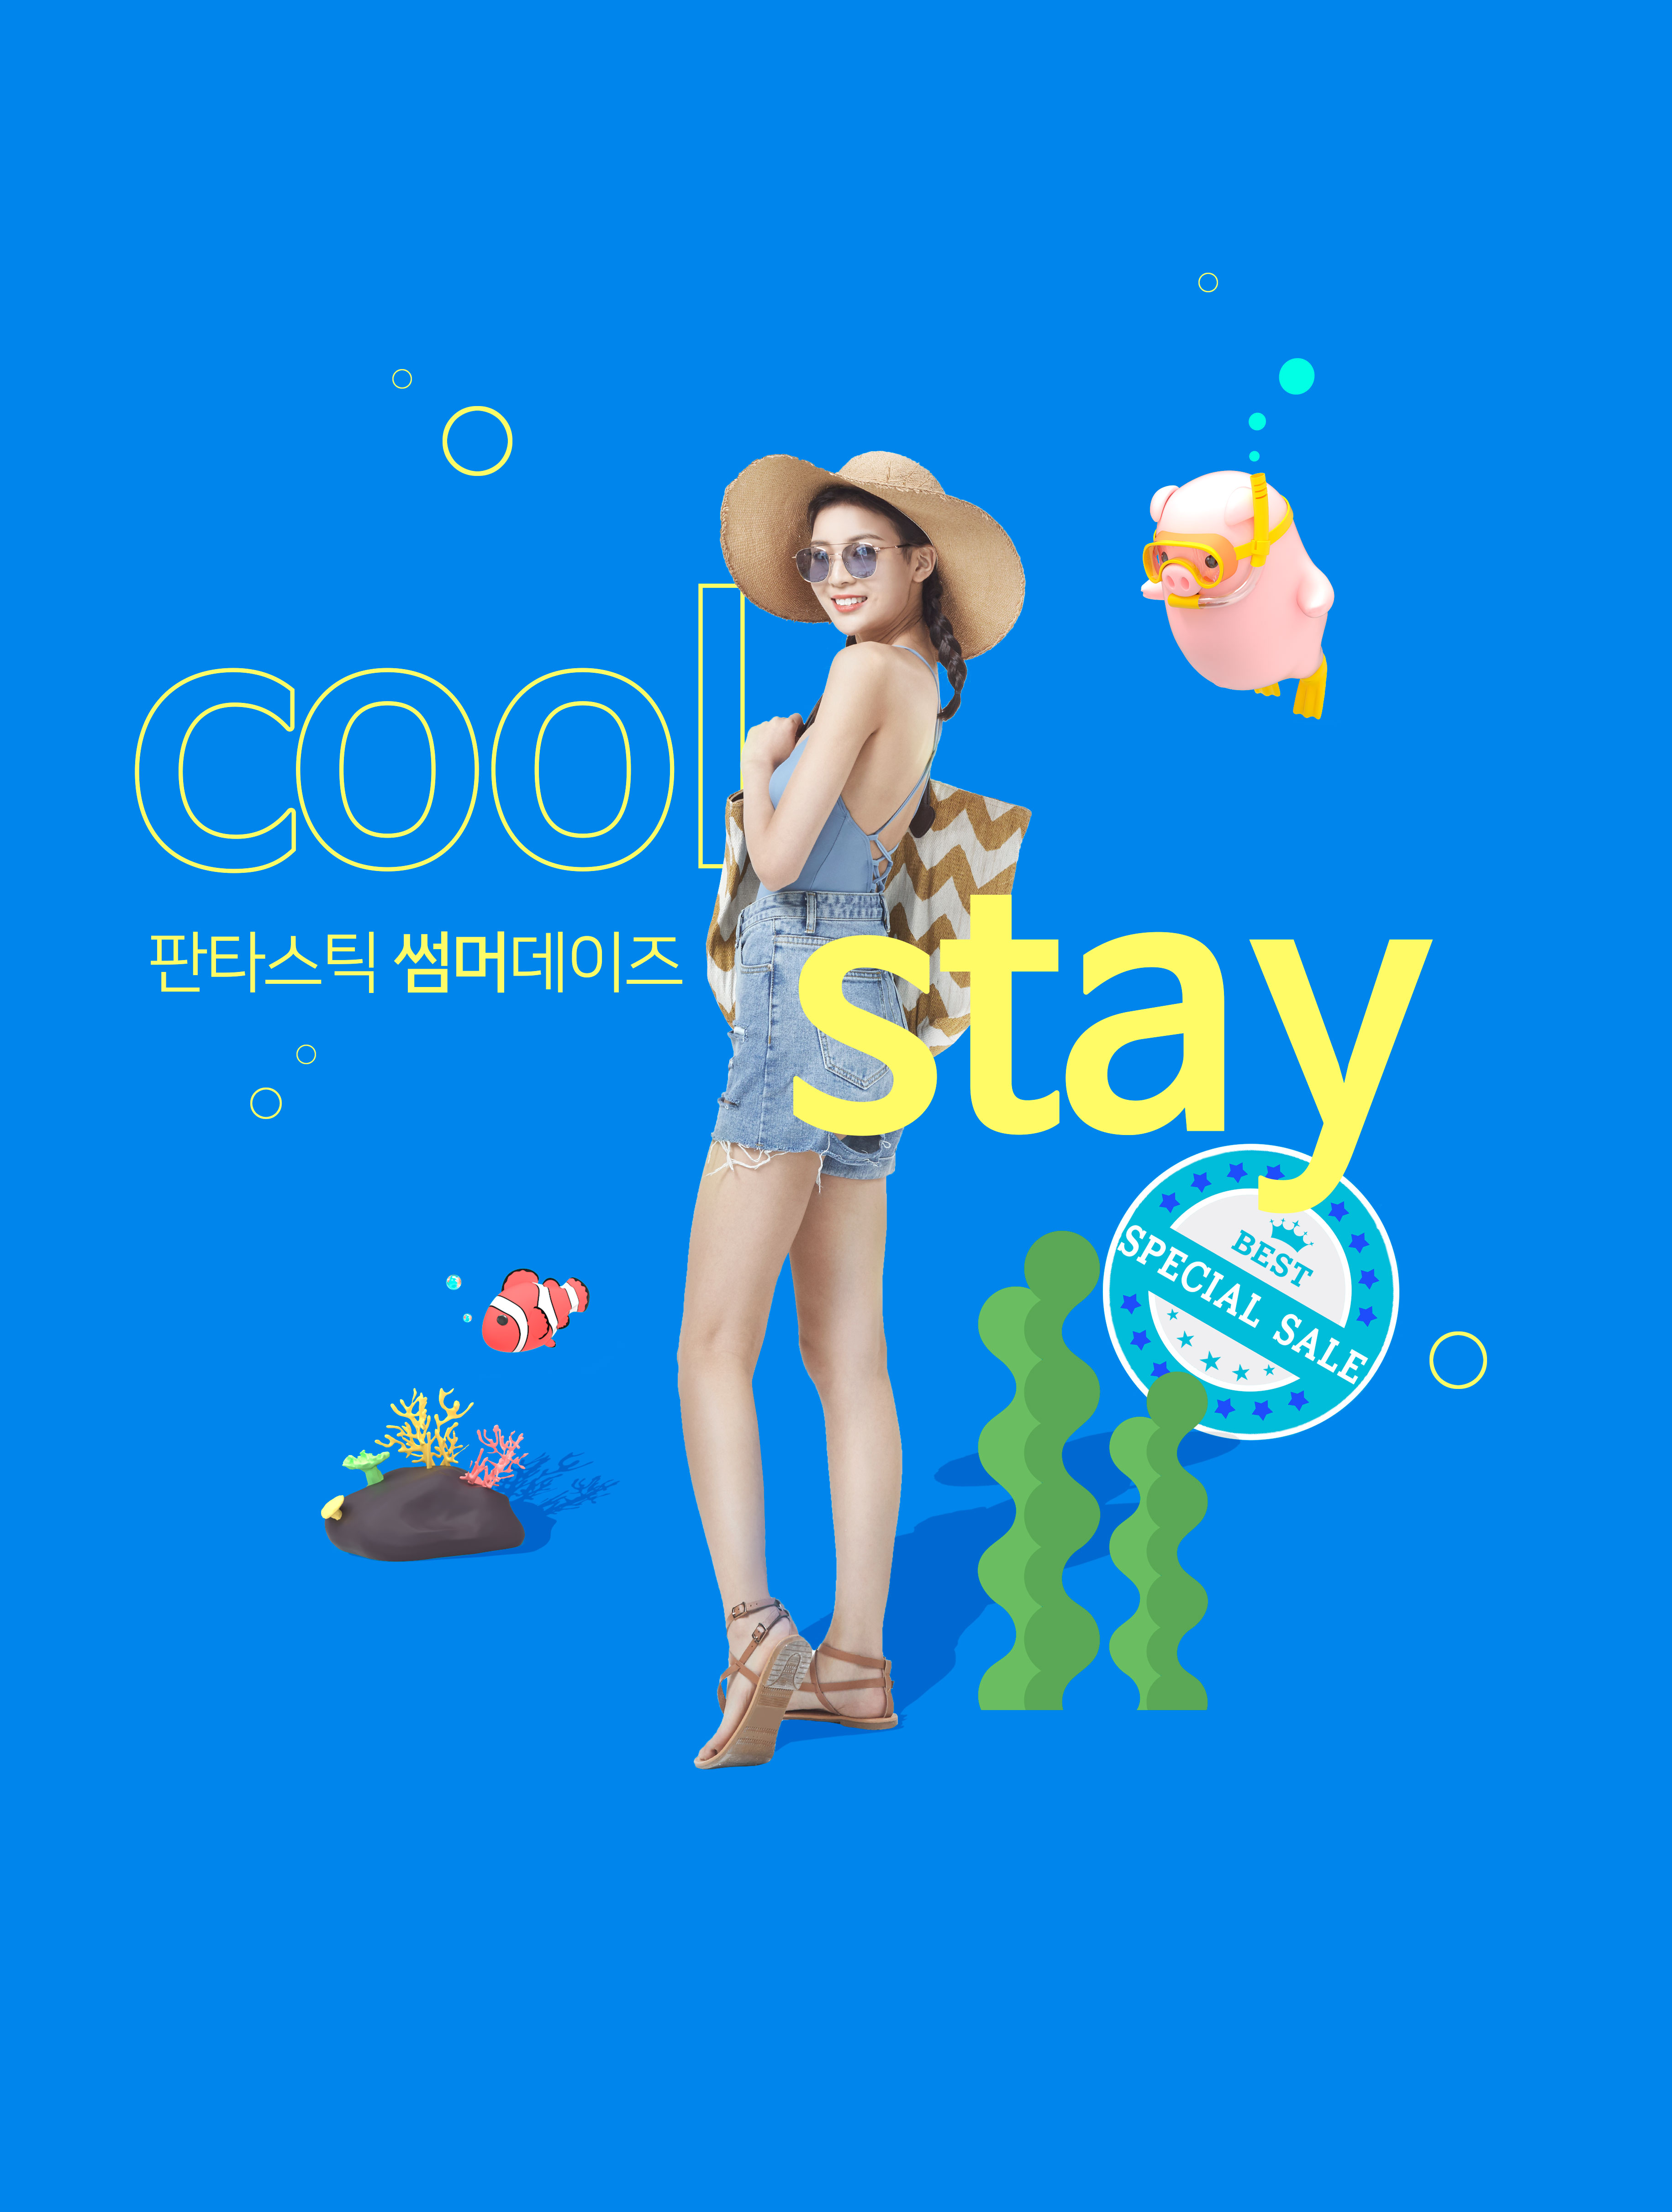 酷暑夏季度假活动广告海报设计套装[PSD]插图(2)